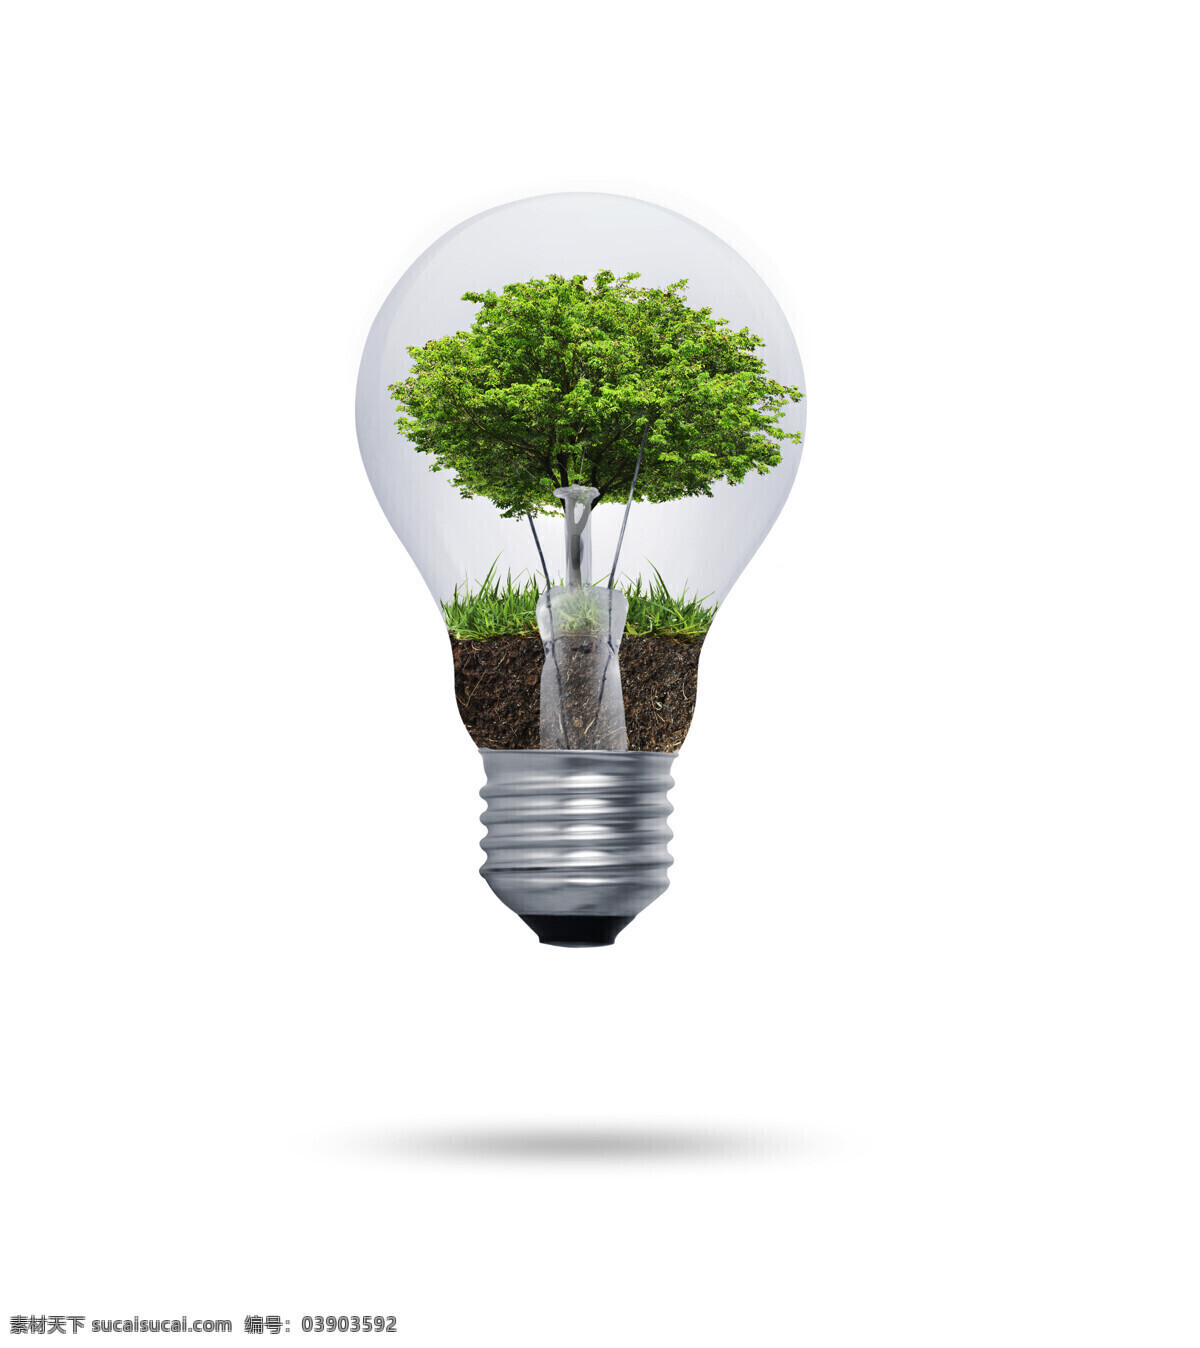 创意电灯设计 草地 土地 大树 植物 电灯 电灯摄影 灯泡 生活用品 节能 环保 其他类别 生活百科 白色